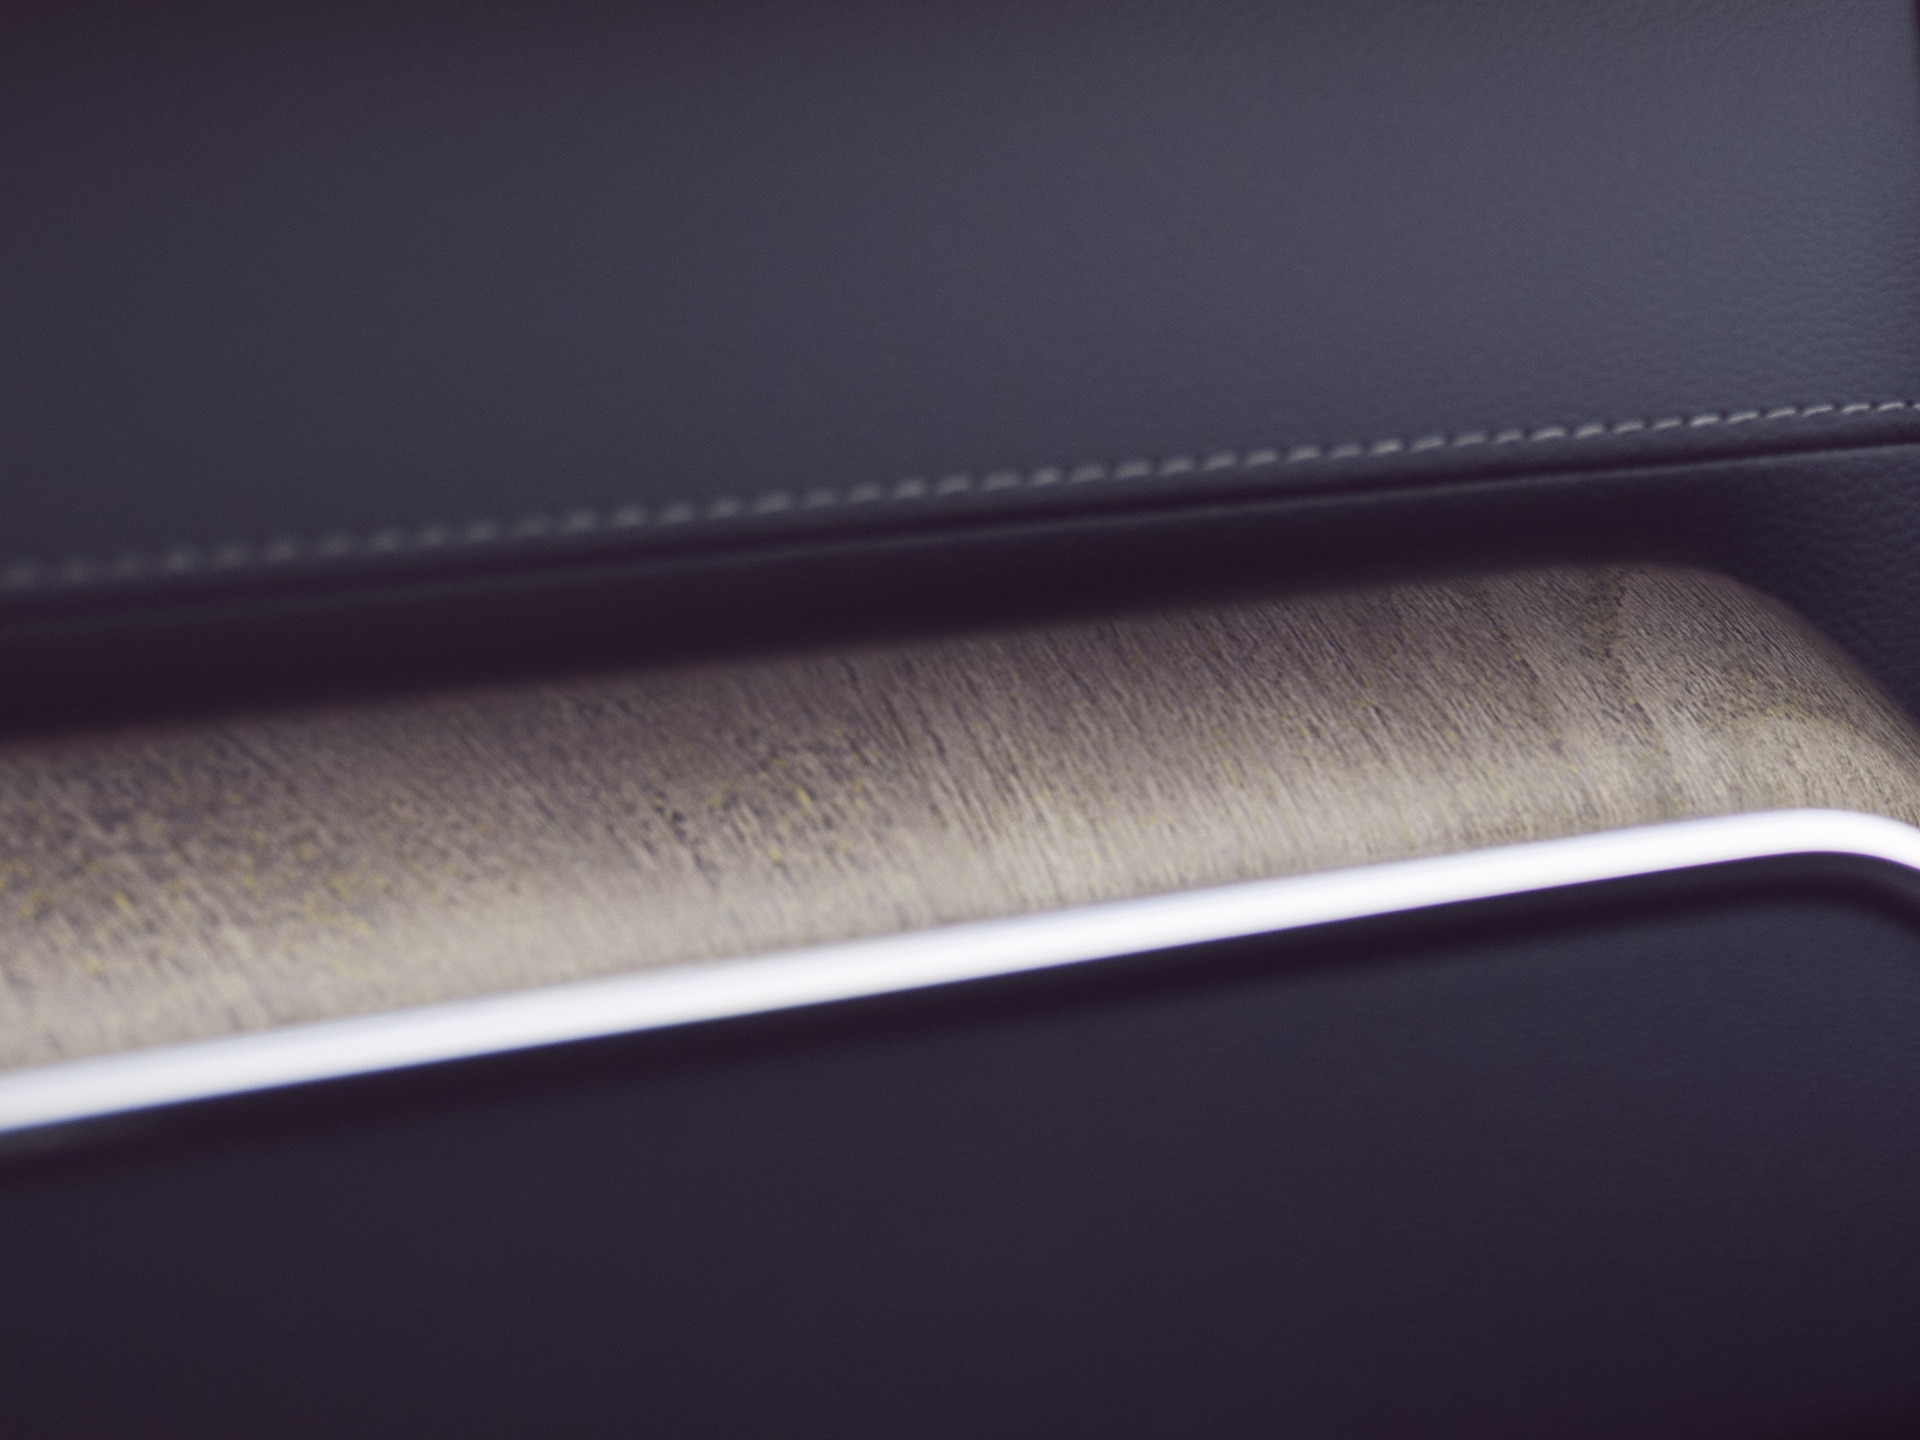 L’insert décoratif en véritable bois flotté dans la Volvo XC60 offre une touche naturelle.